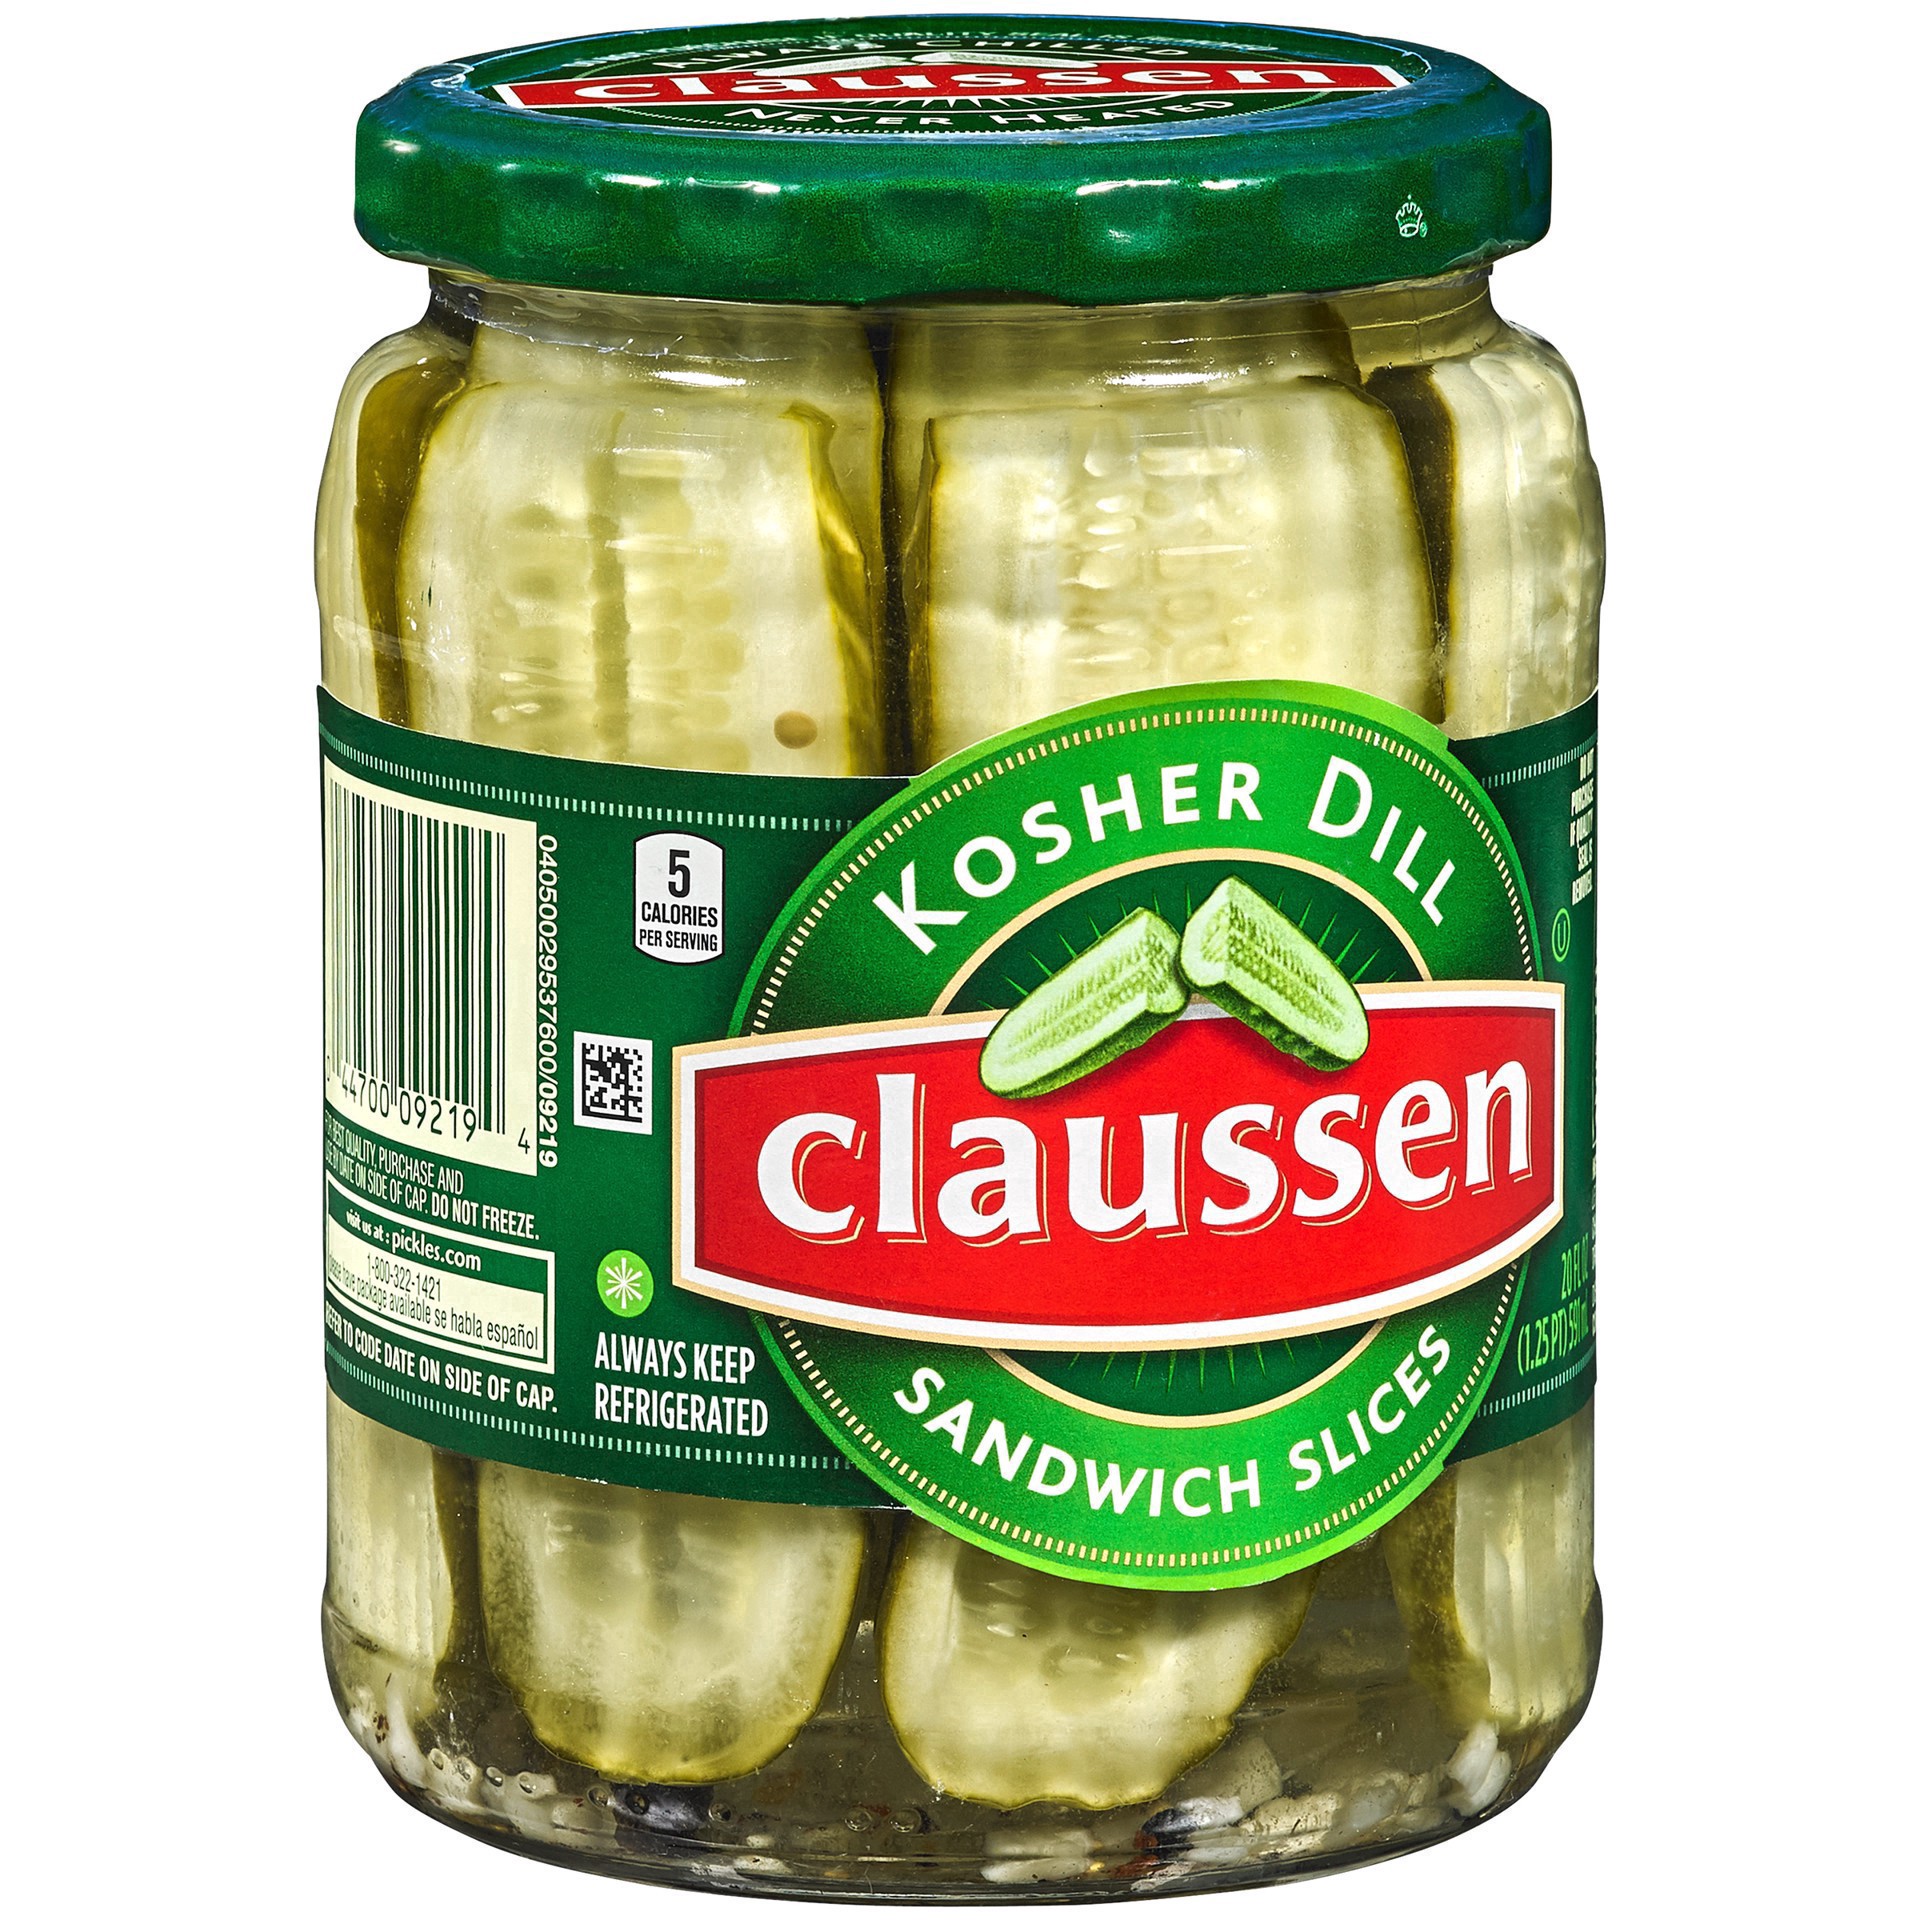 slide 91 of 144, Claussen Kosher Dill Pickle Sandwich Slices, 20 fl. oz. Jar, 20 fl oz